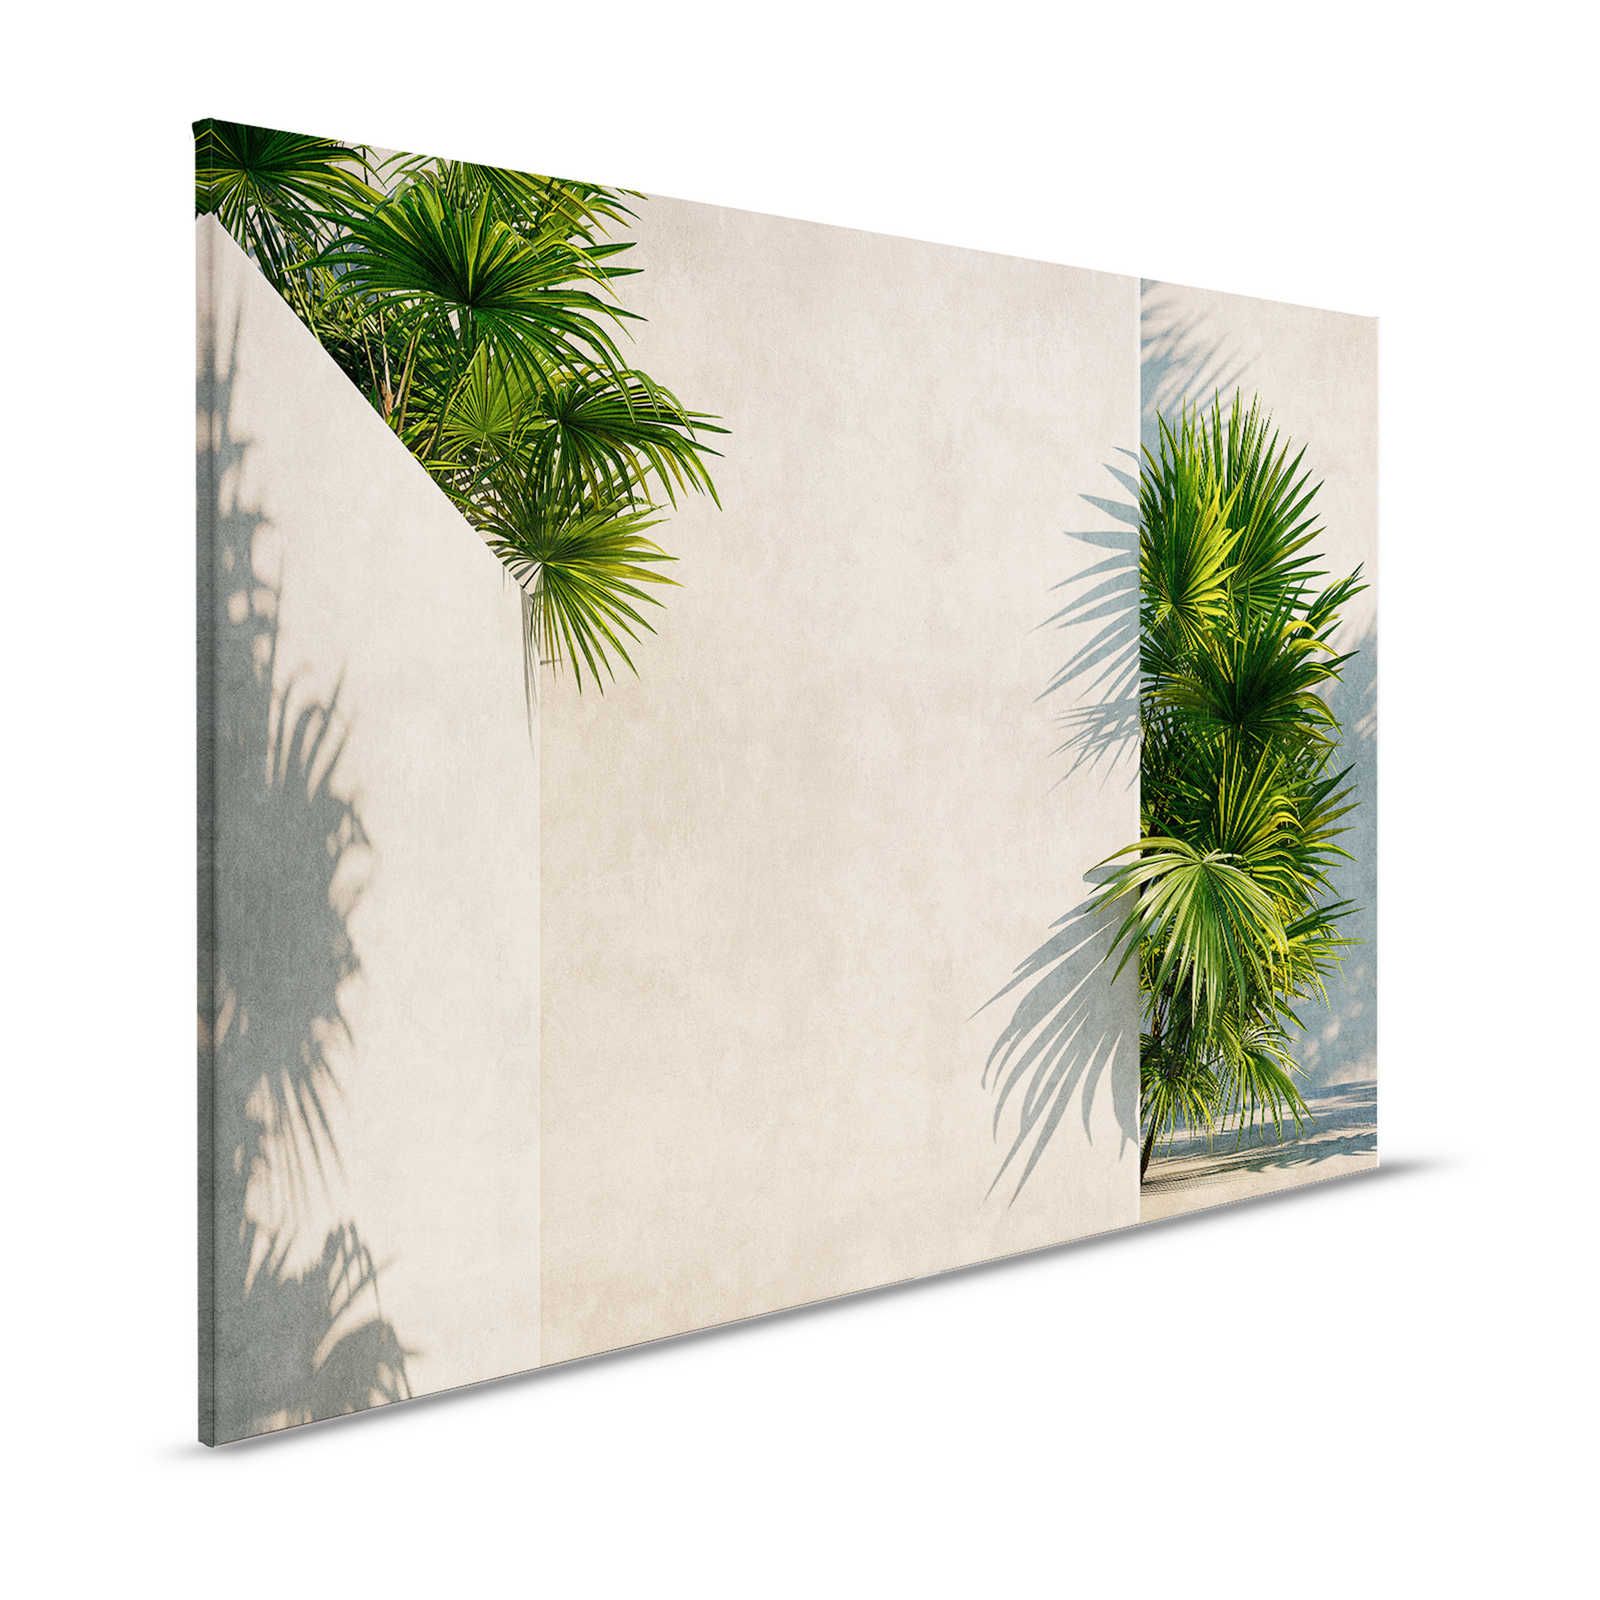 Tunis 1 - Leinwandbild Palmen im Innenhof mit Putz-Wänden – 1,20 m x 0,80 m
